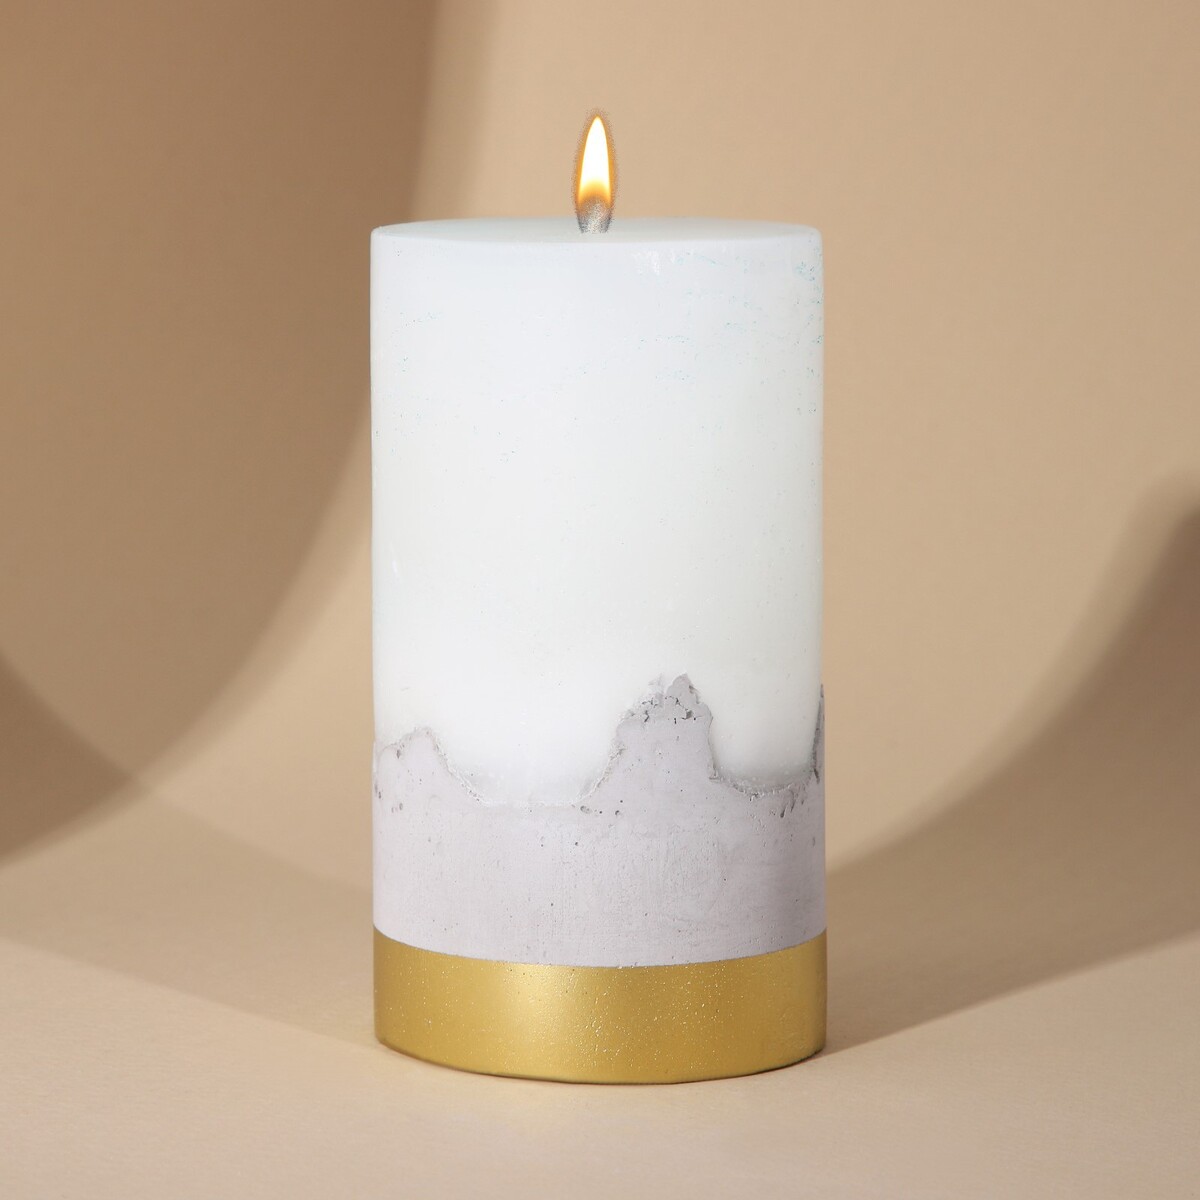 Свеча интерьерная белая с бетоном, низ золото, 13 х 7 см свеча античная 2 2х 25 см лакированная белая